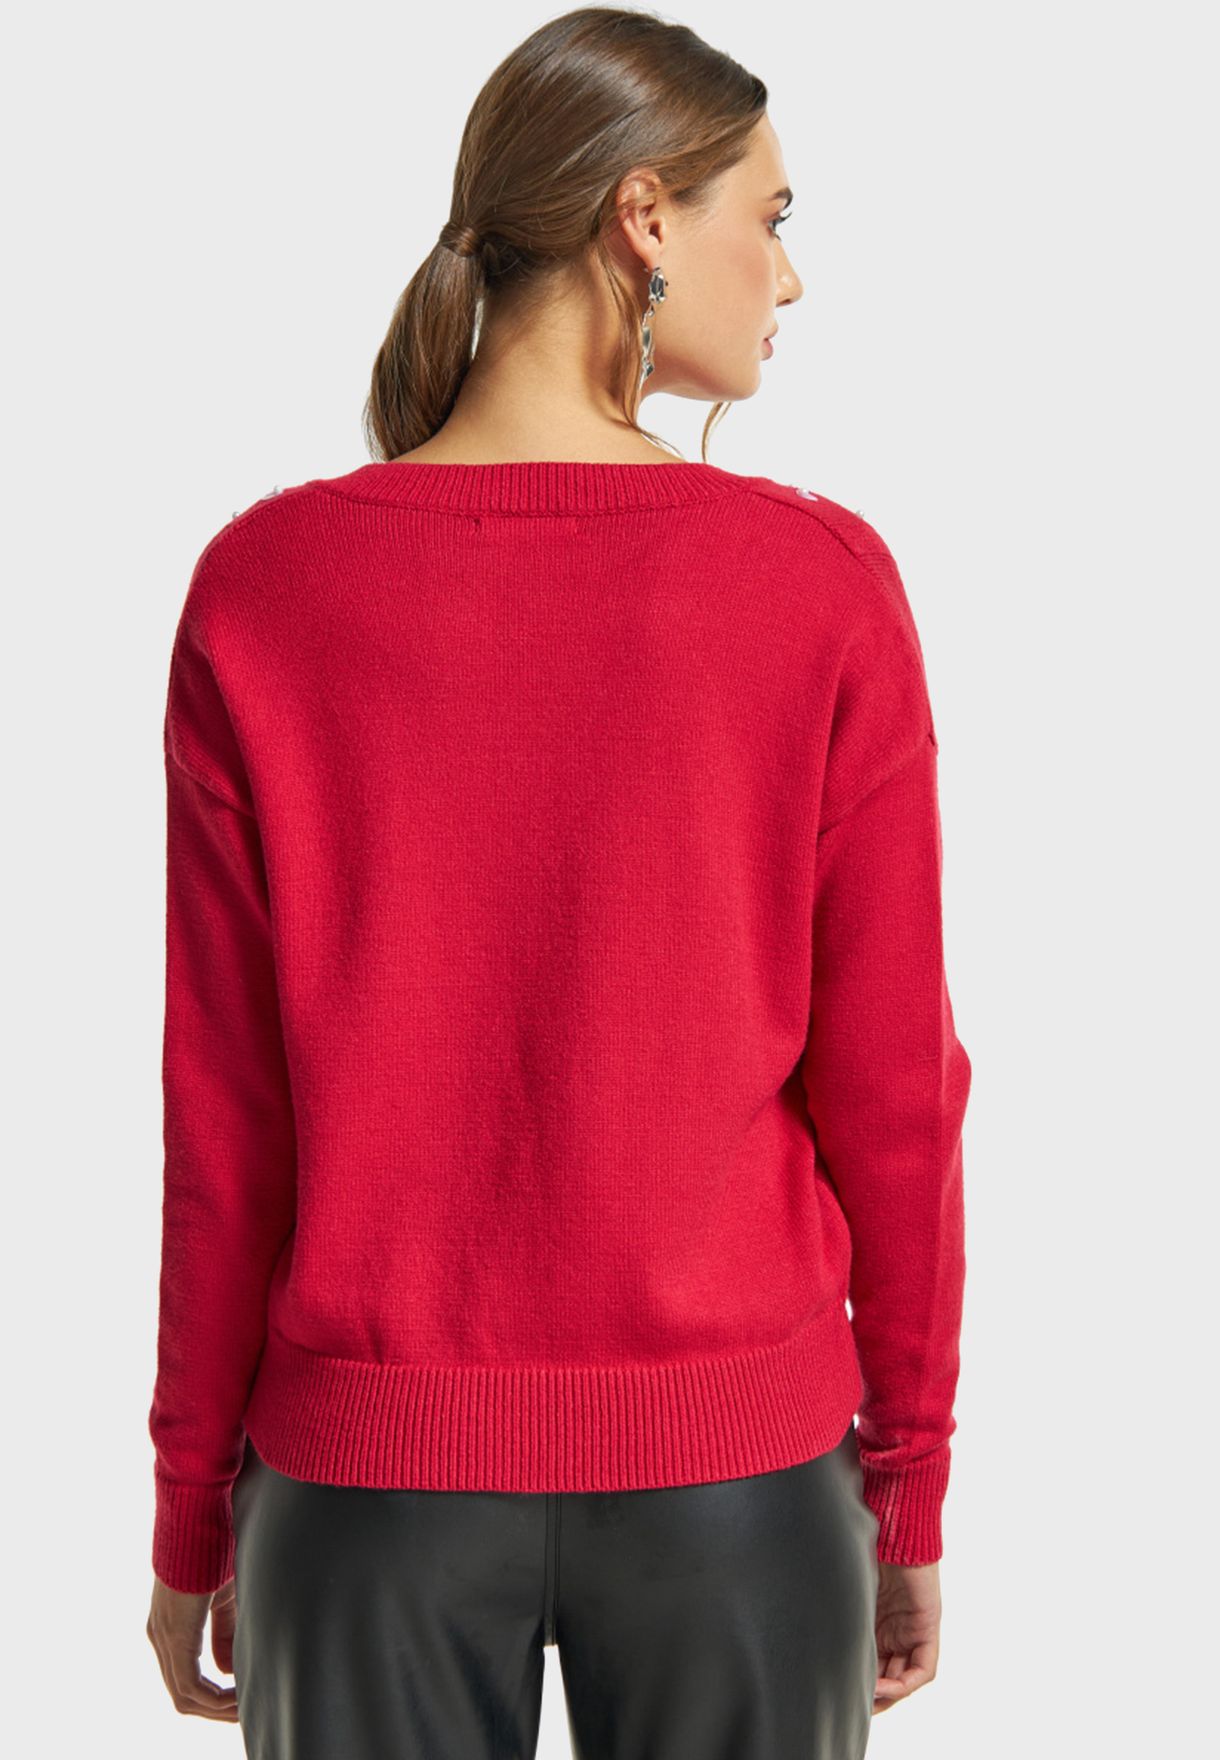 Embellished V-Neck Knitted Sweater